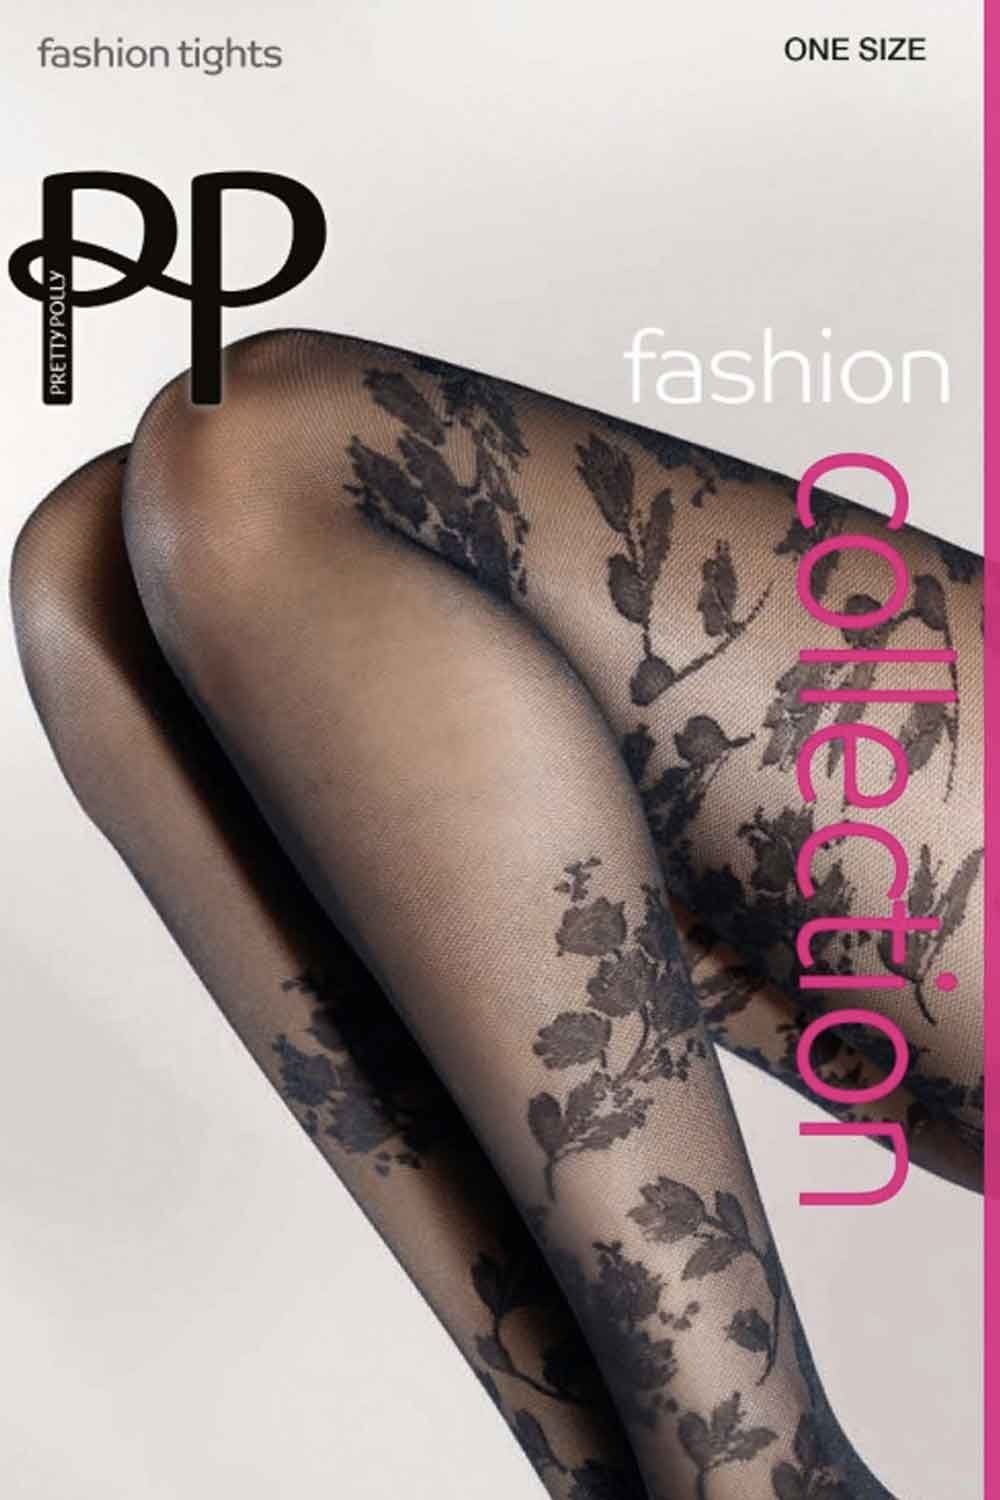 Женственные колготки с цветочным рисунком идеально создадут романтический стильный образ. Созданы по запатентованной технологии OEKO-Tex, что подтверждает их экологичное производство. Балуйте свои ножки! Плотность - 30 ден.